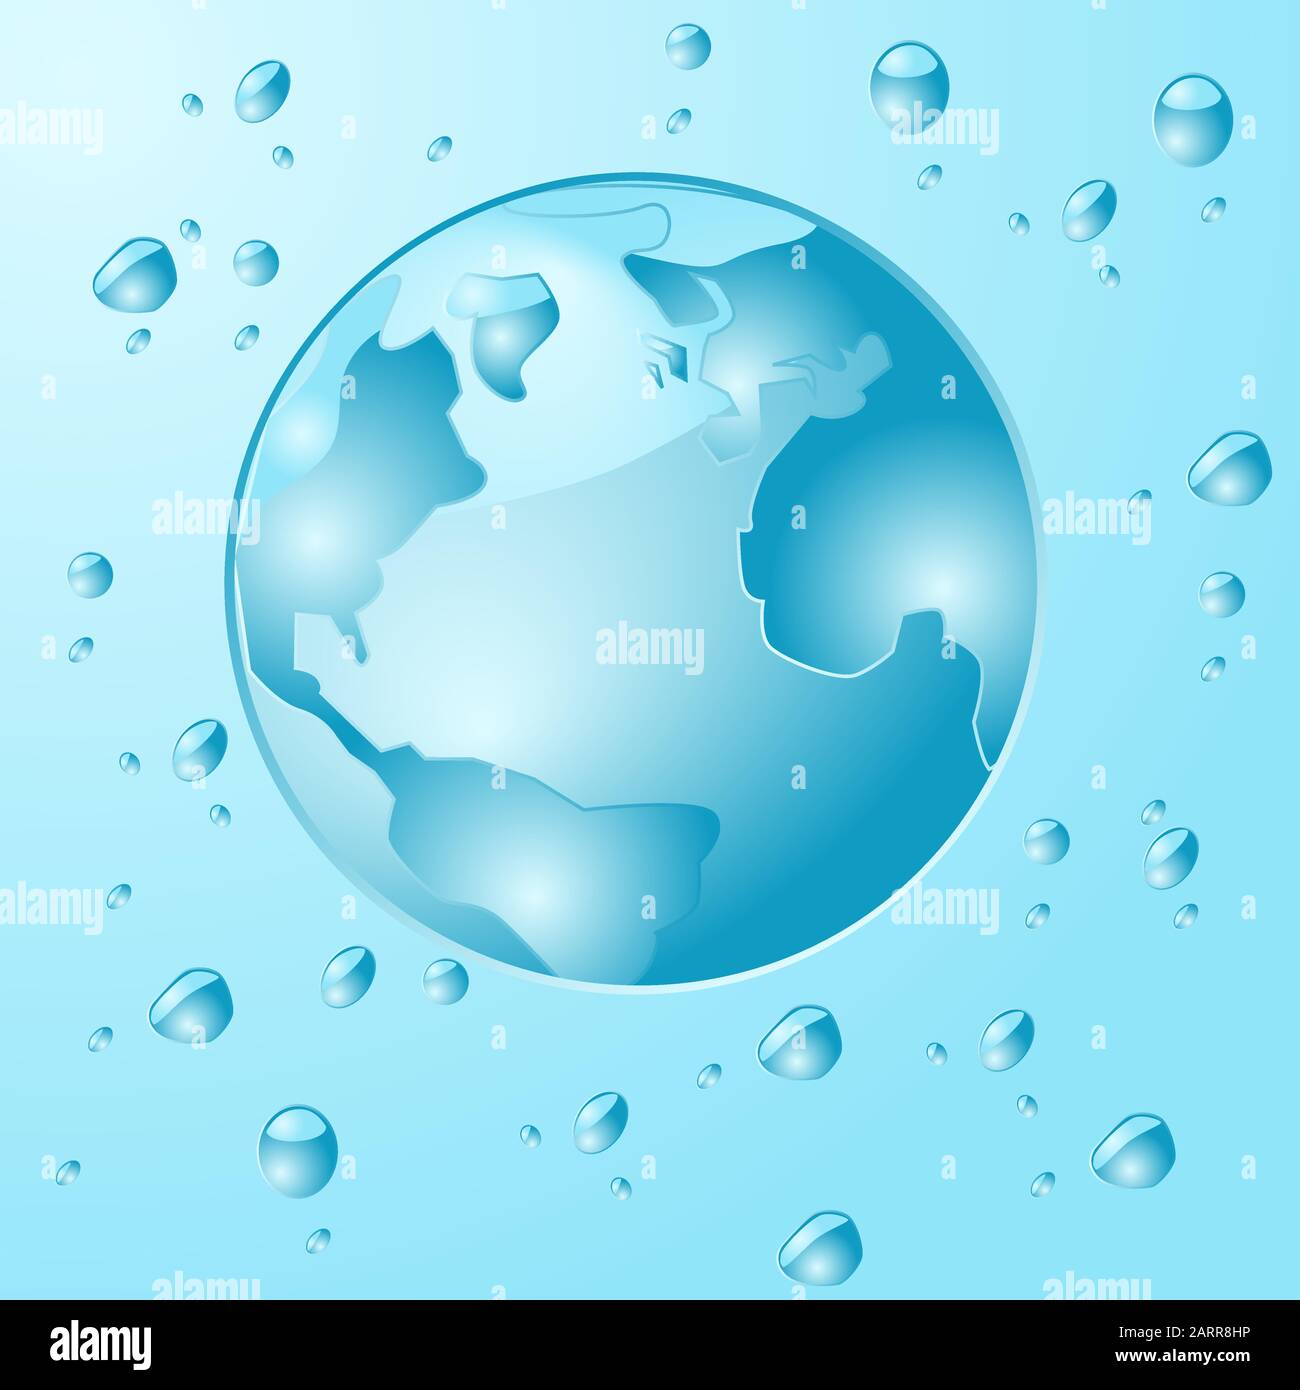 Konzeptdarstellung, die einen blauen Planeten Erde zeigt, der aus Wassertropfen besteht und von Wassertropfen umgeben ist Stock Vektor